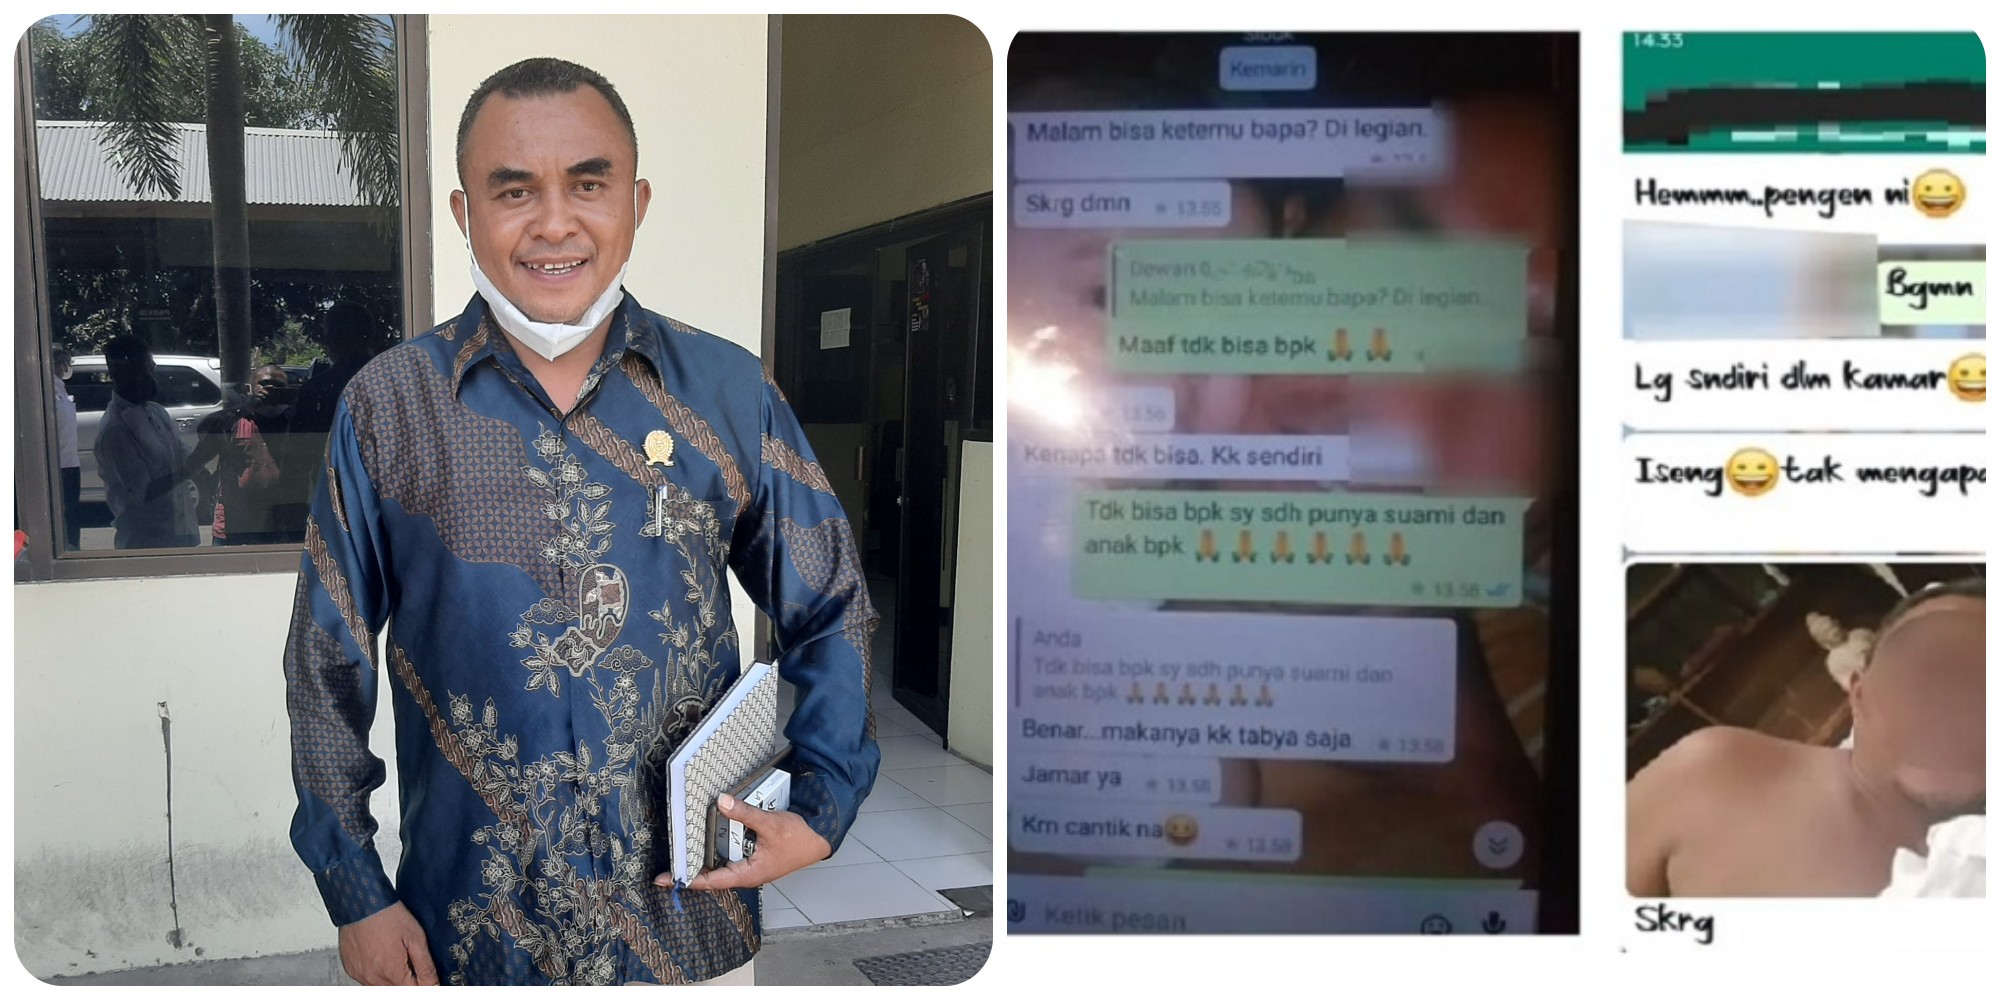 Wakil Ketua DPRD TTU Ajak Dua Staf Berbuat Mesum, Isi Chatnya Viral